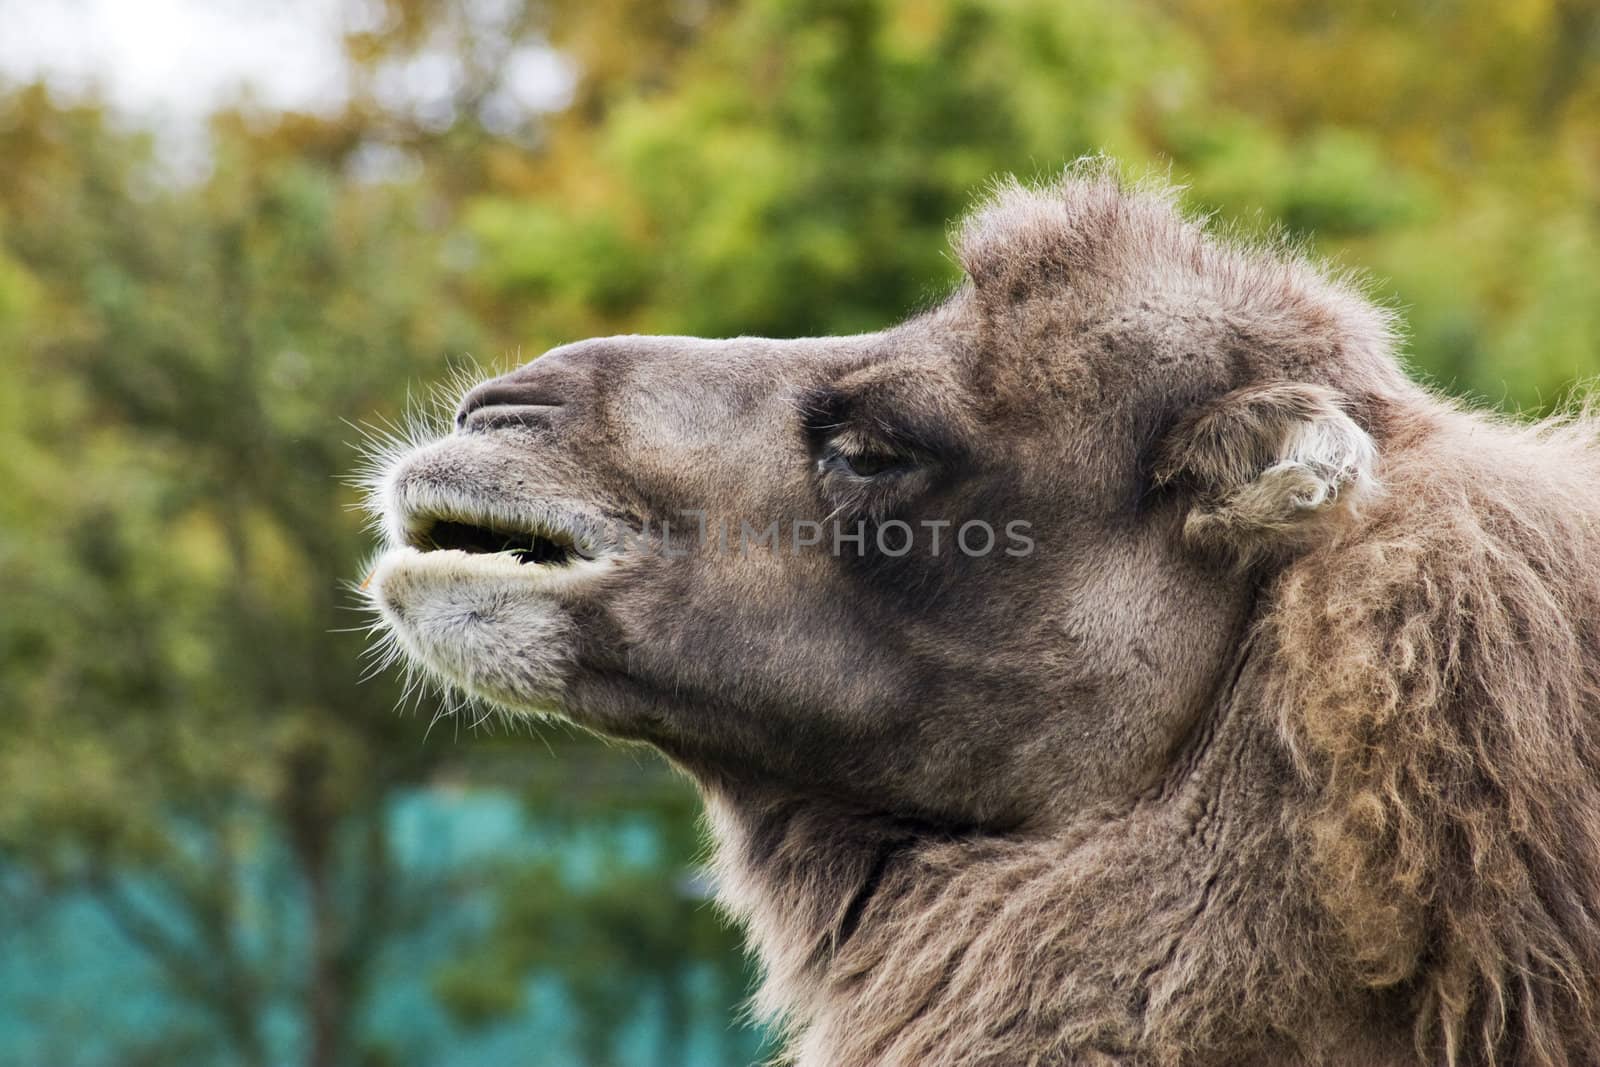 A close up of a camel's head